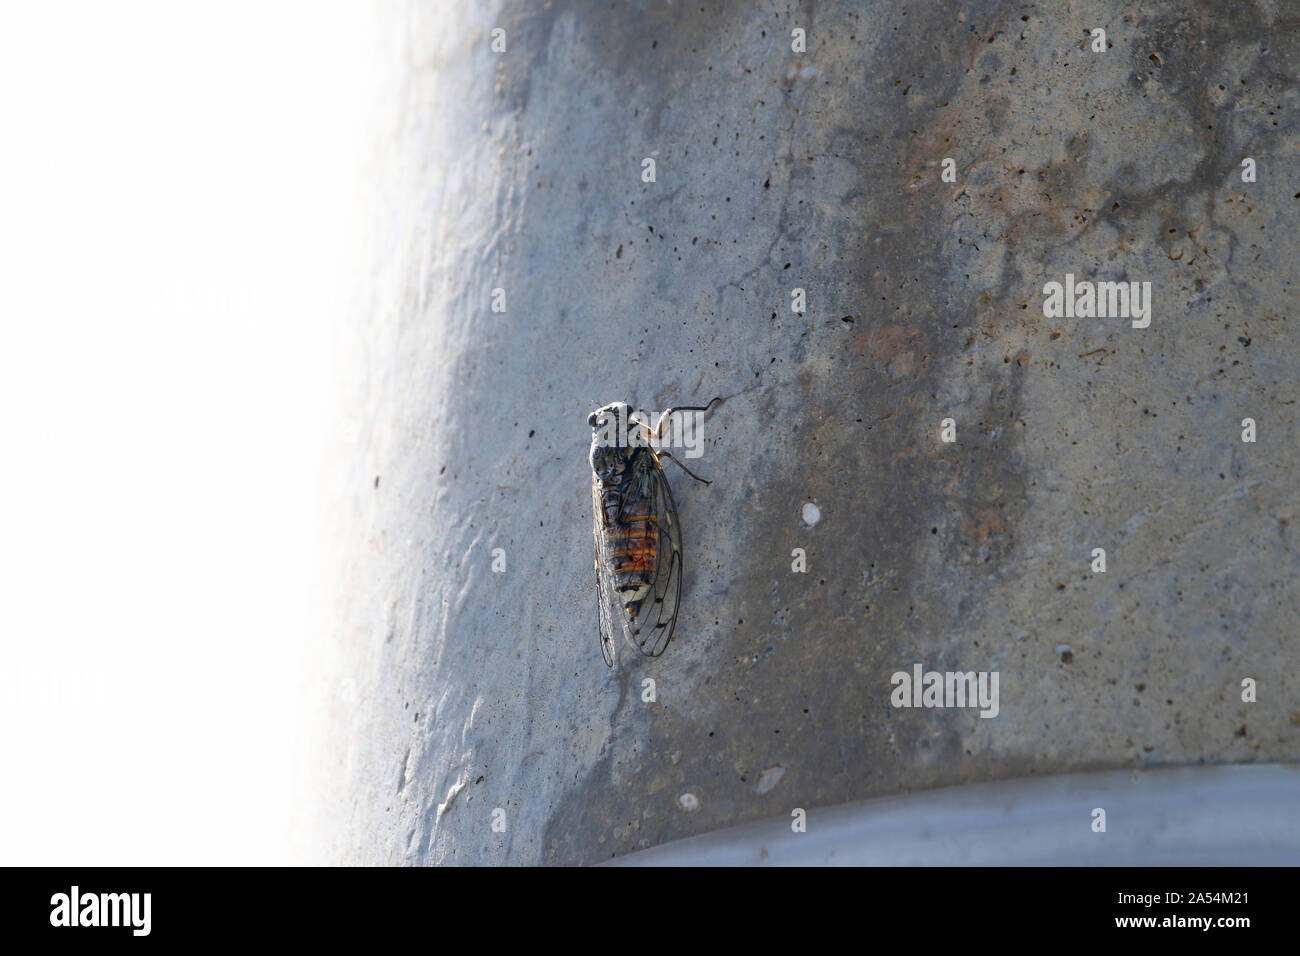 Unión cicada orni en reposo sobre un poste de hormigón en verano en el centro de Italia un bug homopteran con 11 variedades diferentes de manchas en las alas. Foto de stock